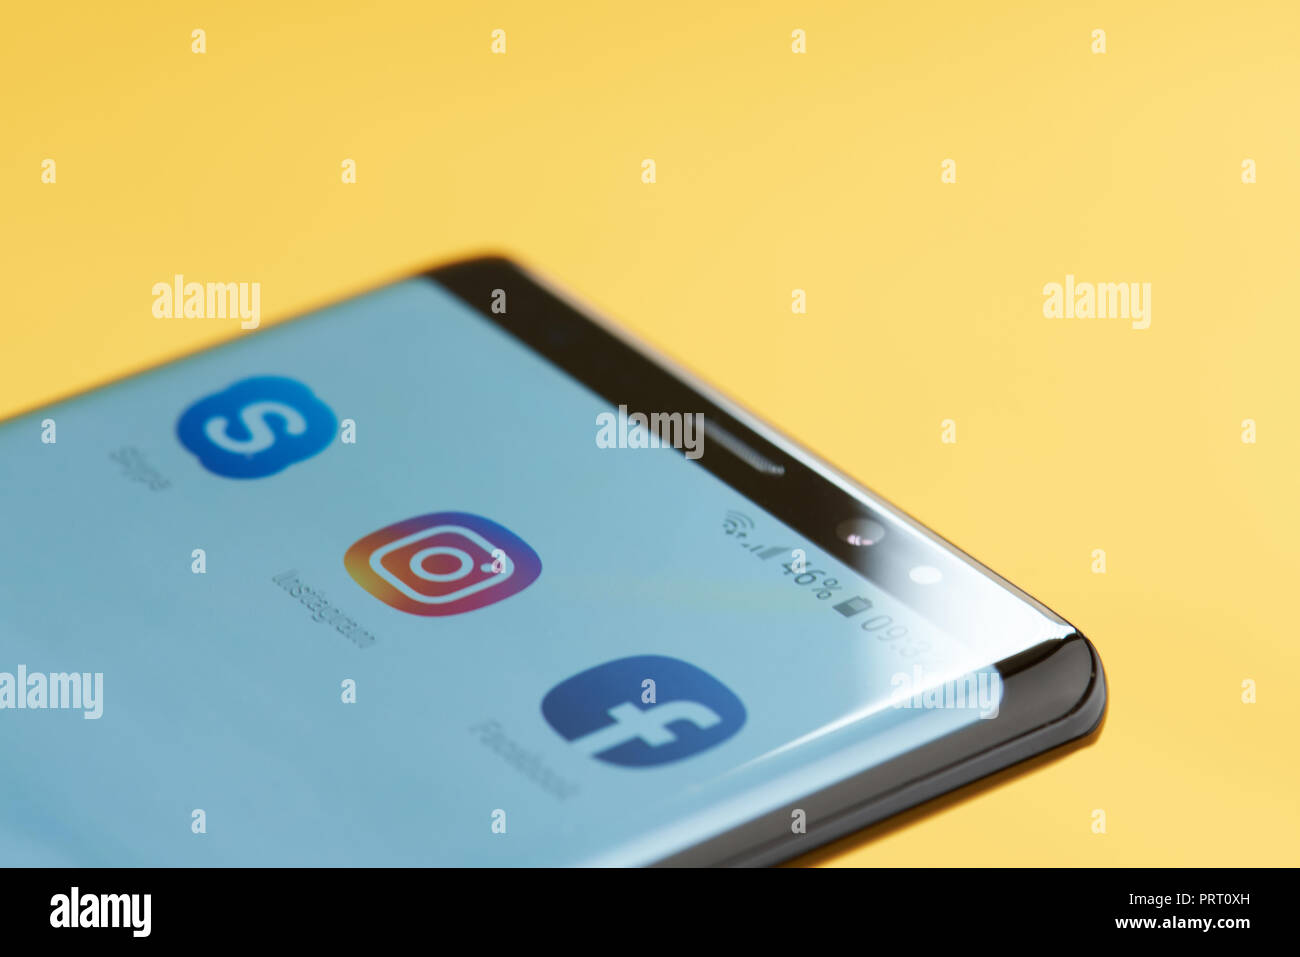 New York, USA - 3 octobre 2018 : l'icône sur l'écran du smartphone Instagram vue en gros à fond jaune Banque D'Images